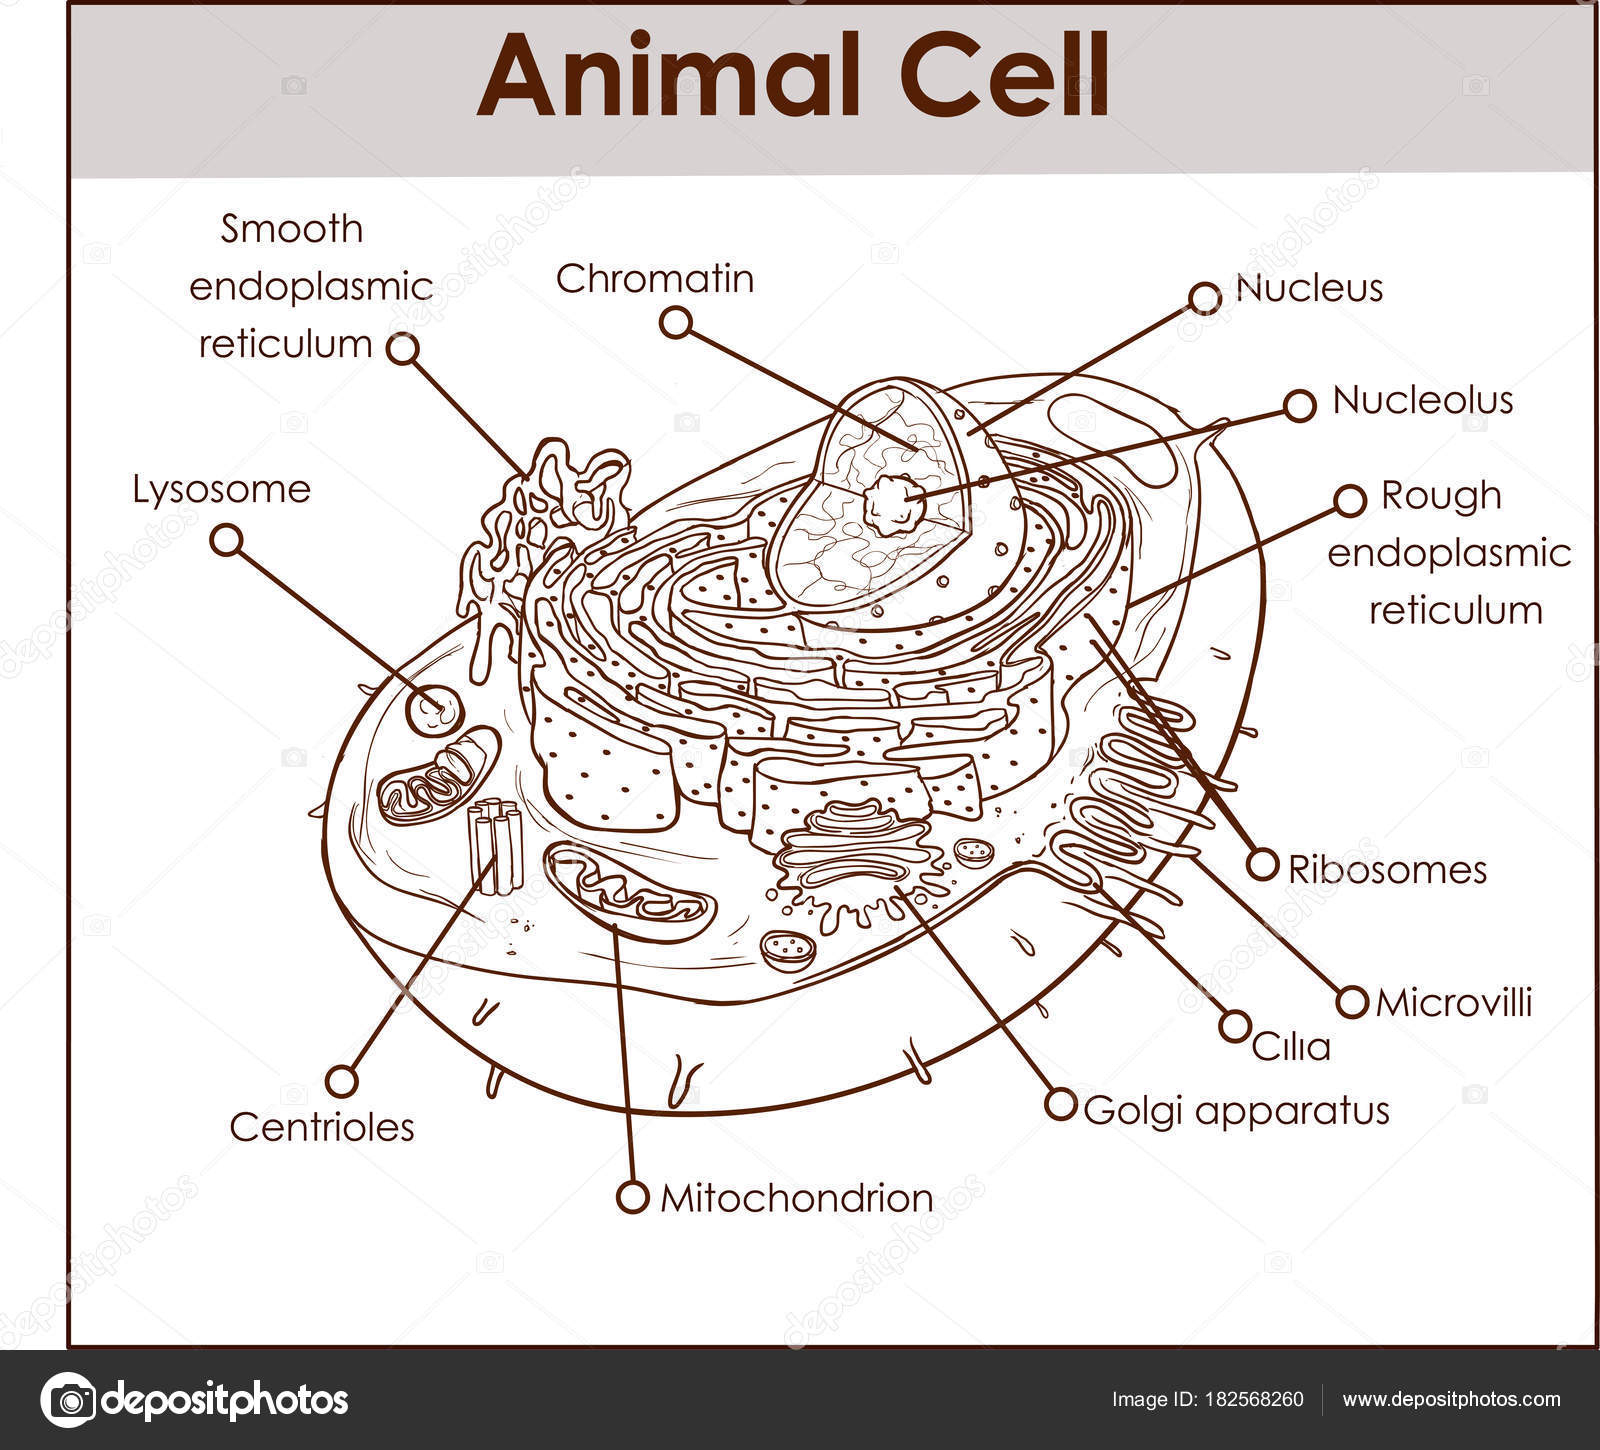 Diagram Of An Animal Cell Diagram Of Animal Cell Animal Cell Anatomy Diagram Structure With